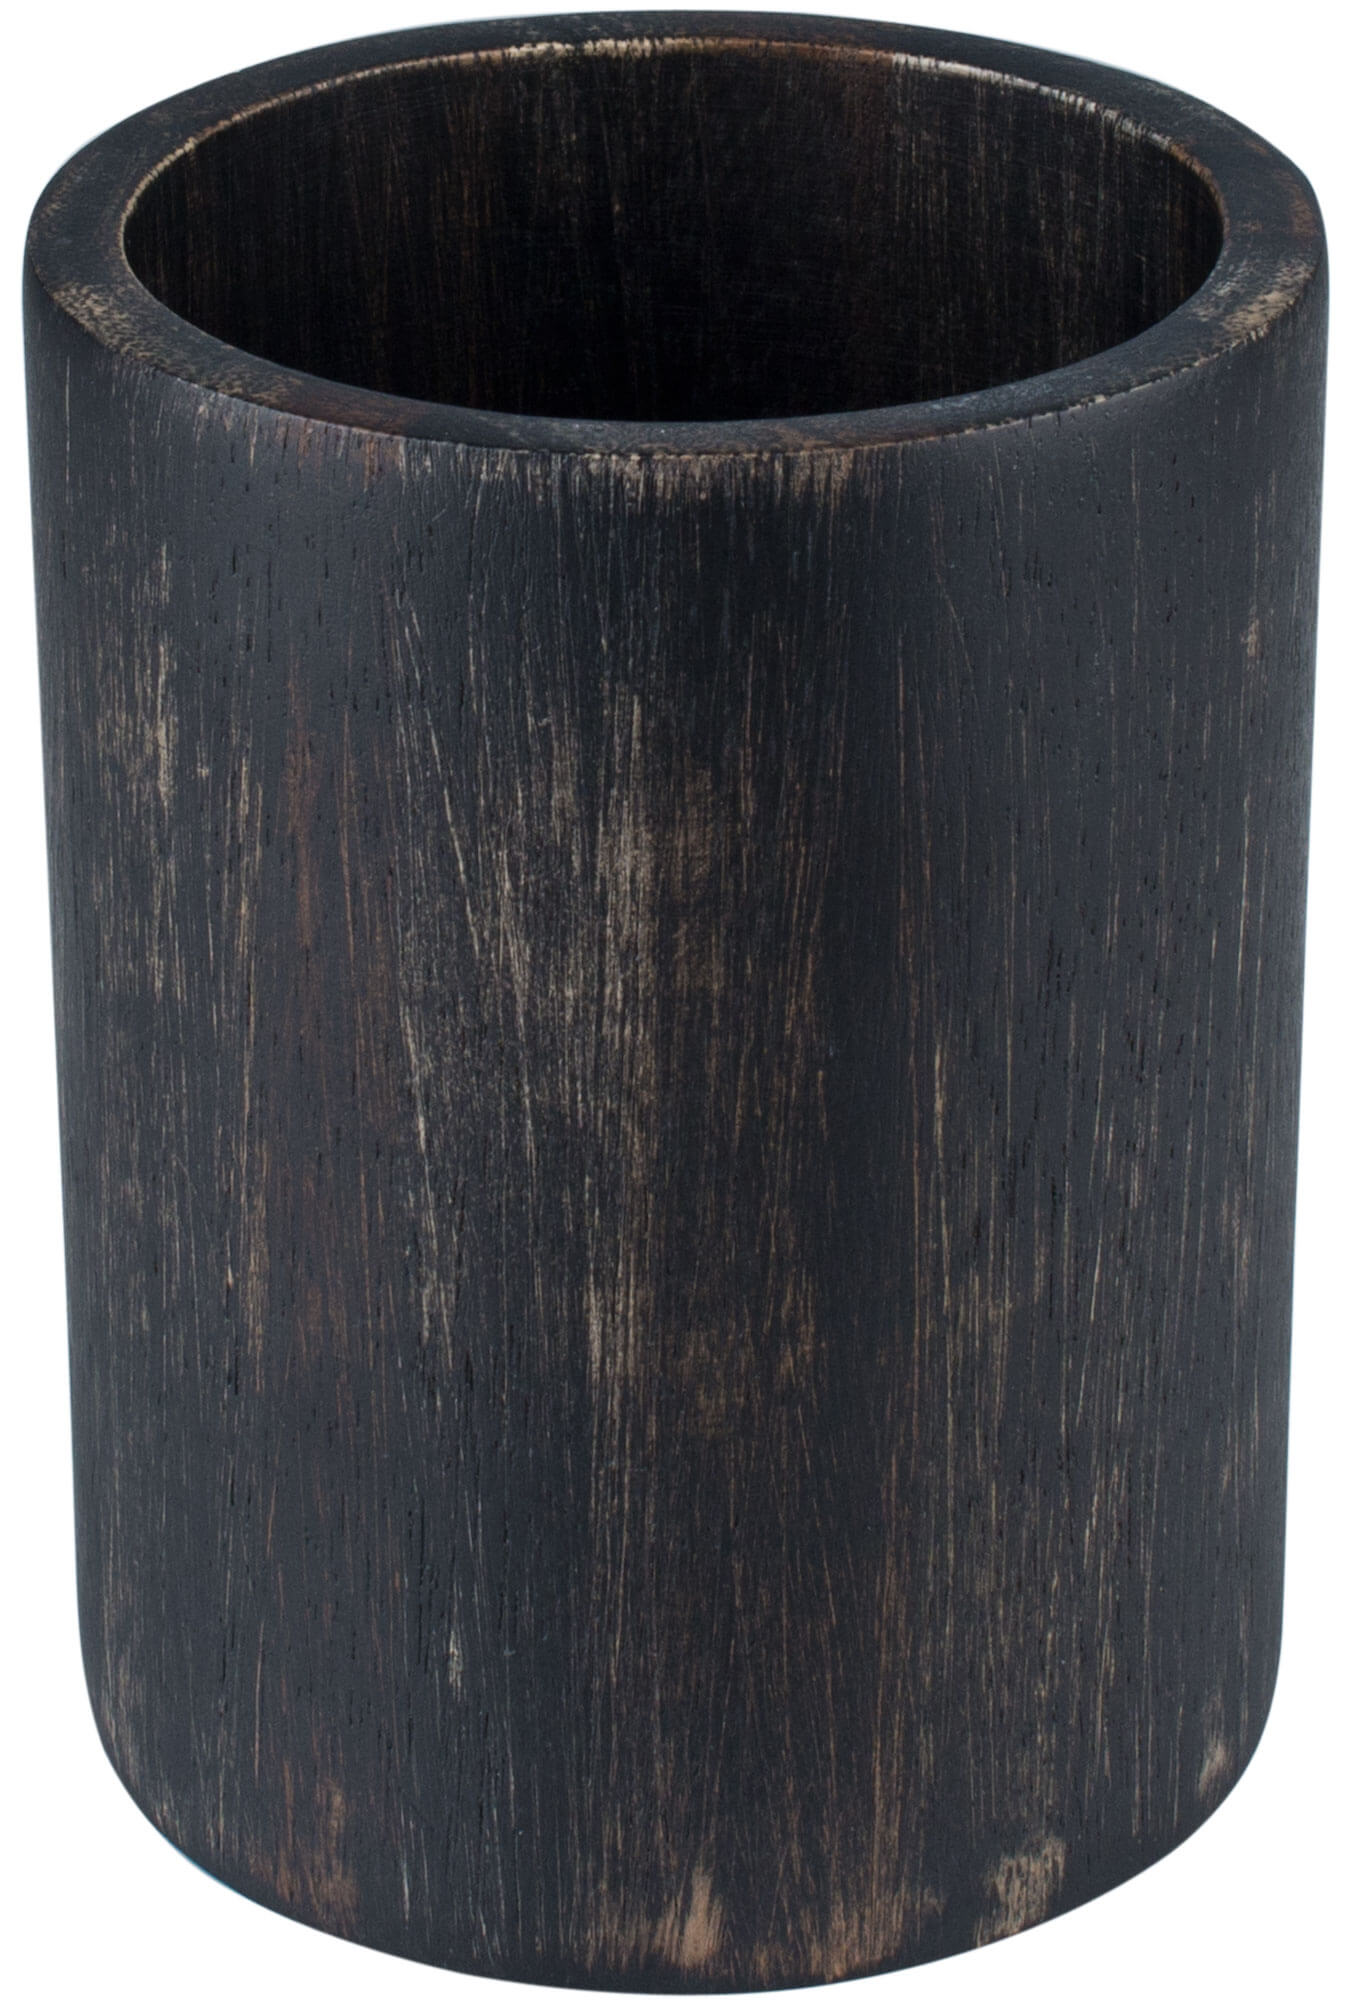 Besteckhalter Akazienholz schwarz/washed - 10x13,2cm